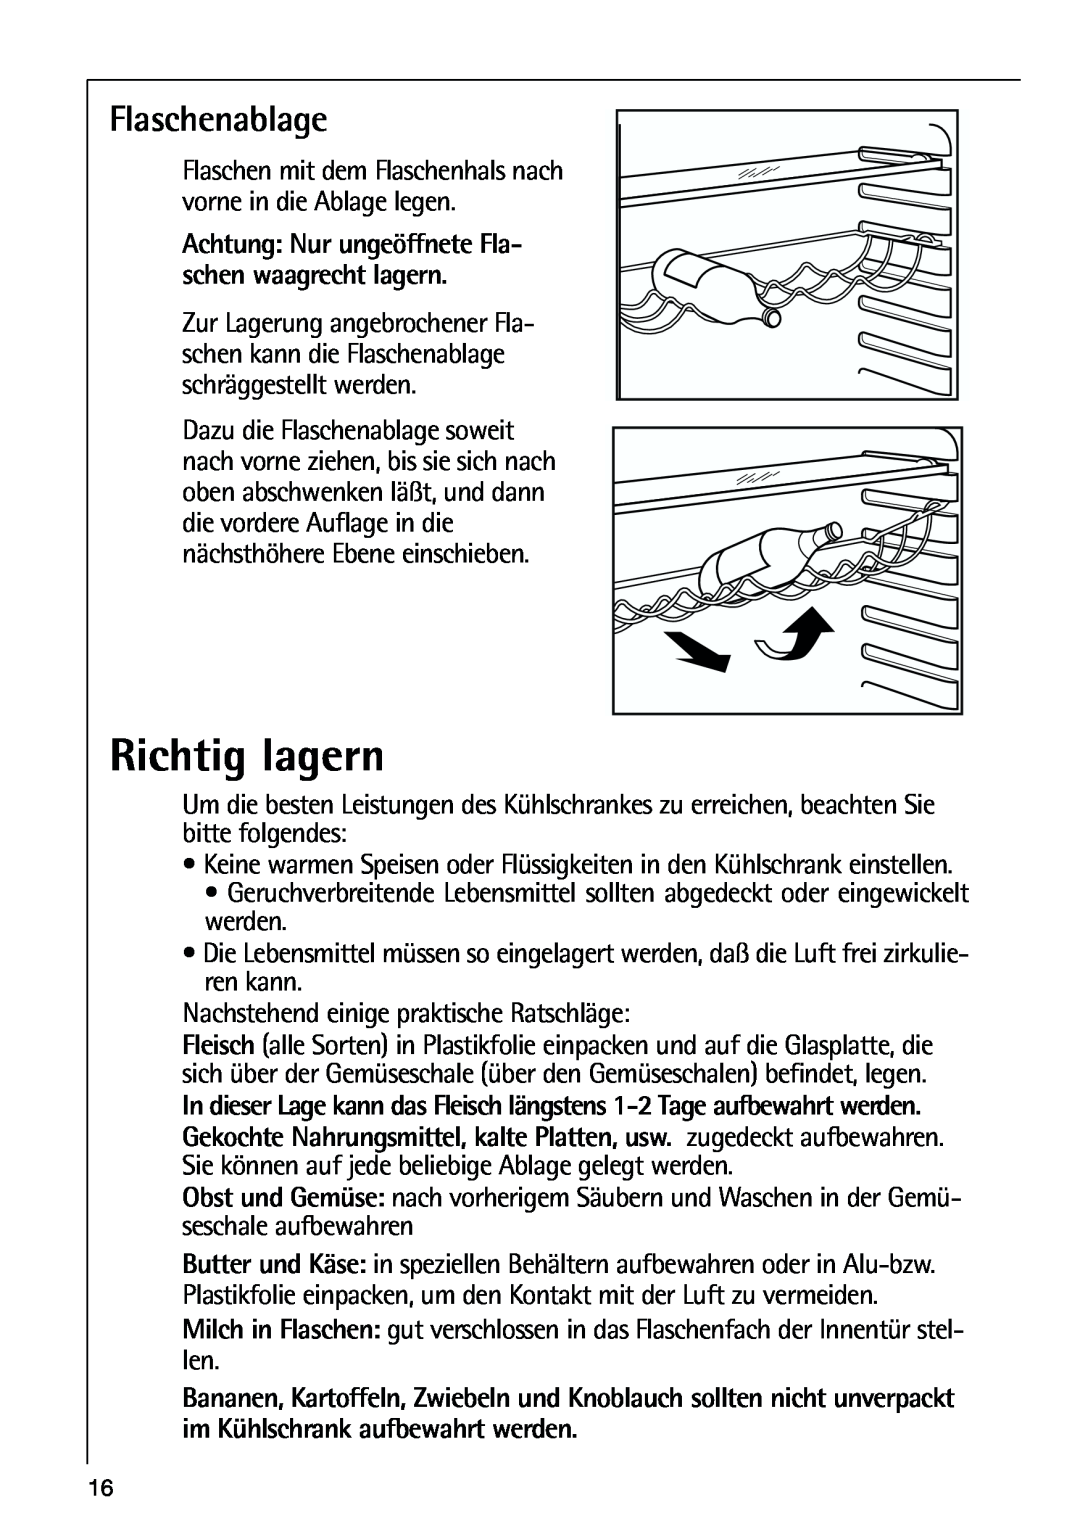 AEG 80318-5 KG user manual Richtig lagern, Flaschenablage 